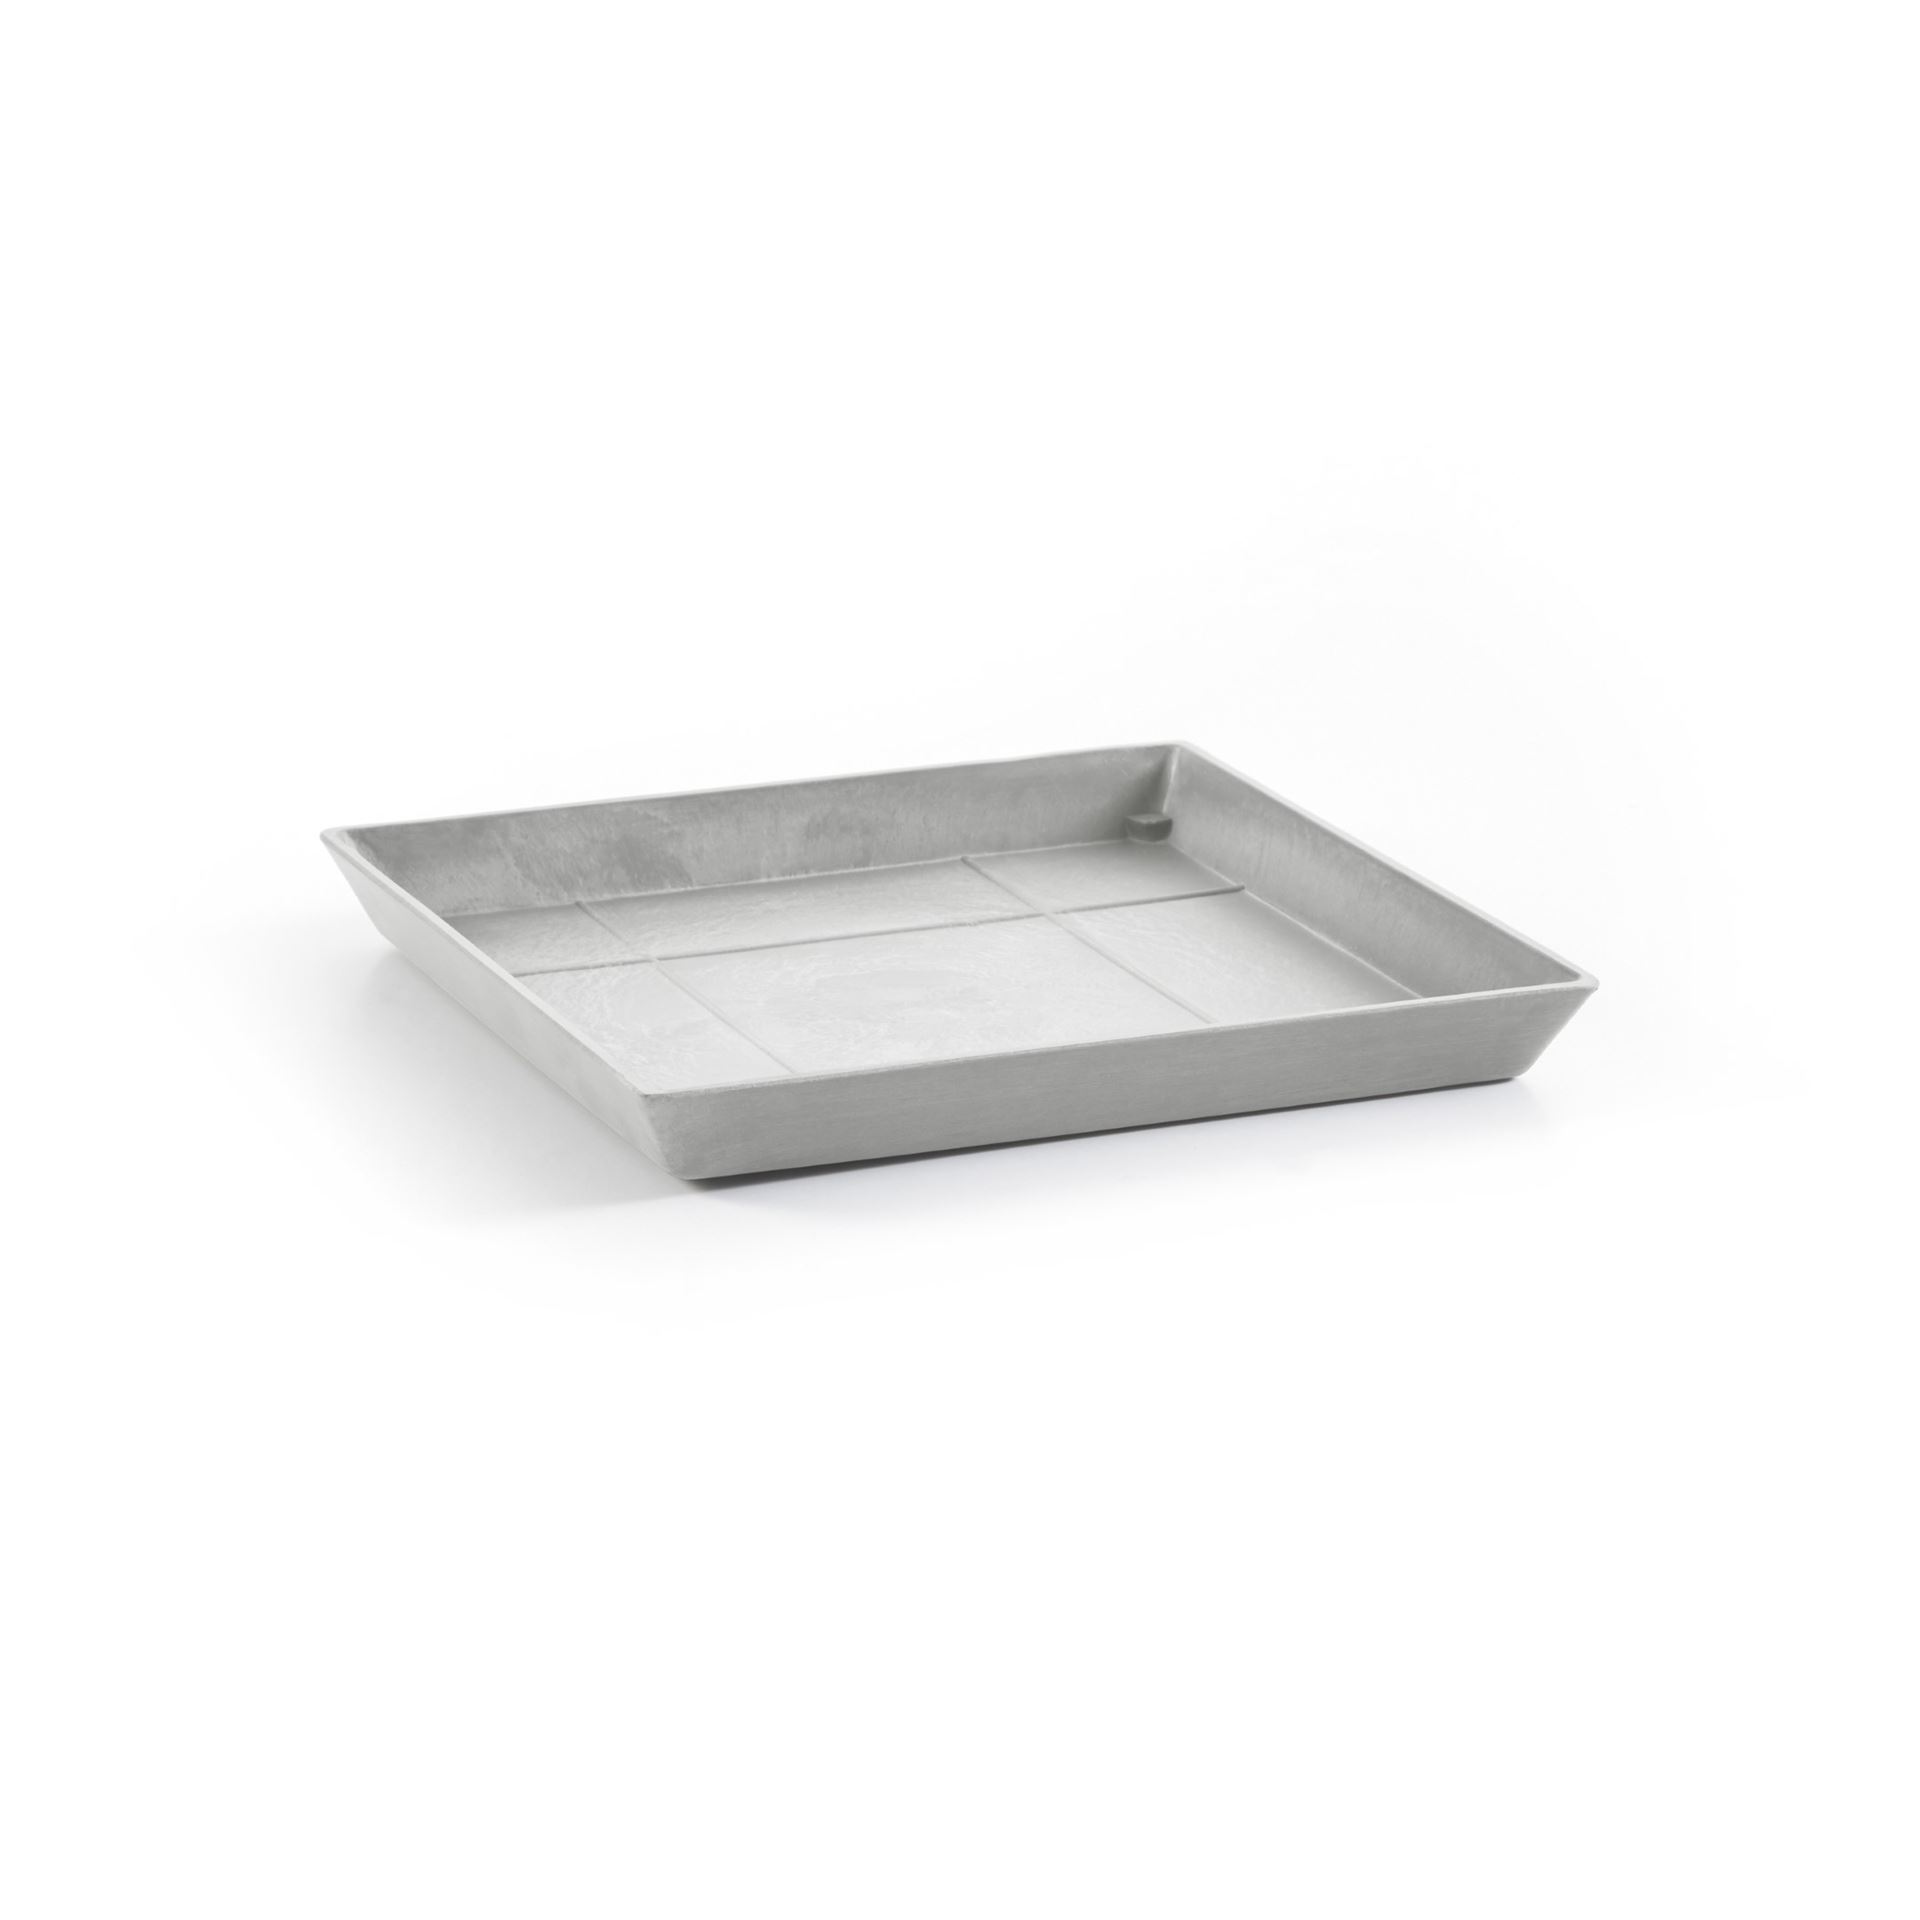 Ecopots Saucer Square - White Grey - 28 x H3 cm - Vierkante witgrijze onderschotel met waterreservoir